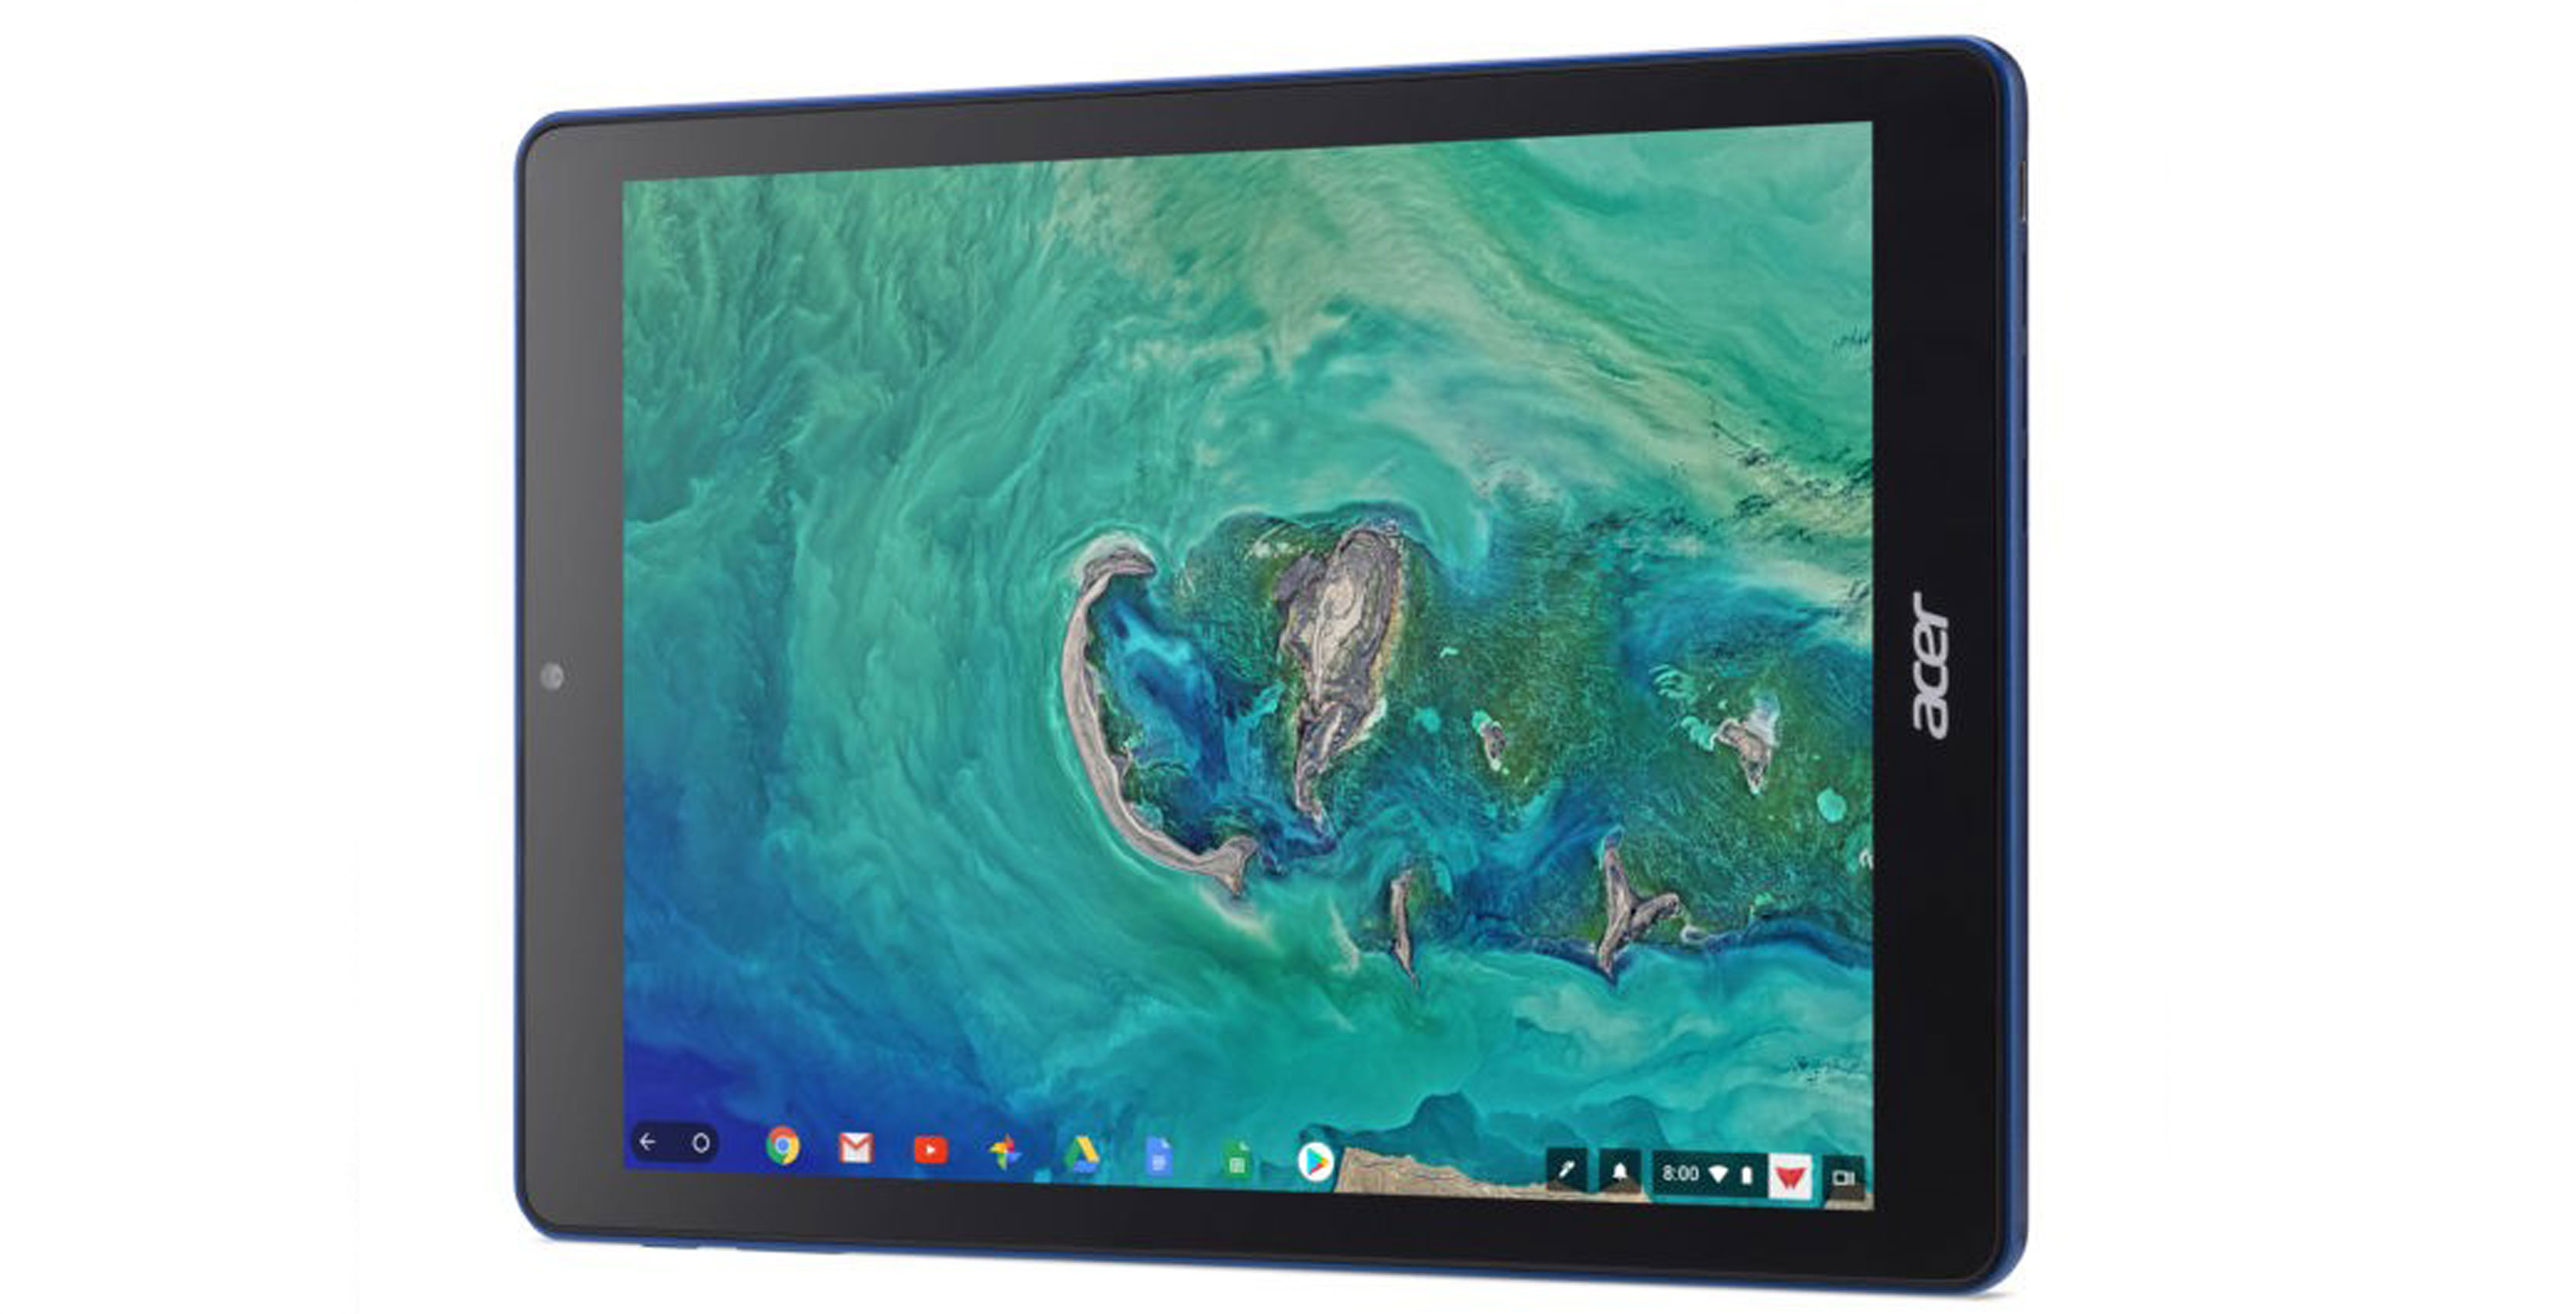 Acer's new Chromebook Tab 10 Chrome OS tablet